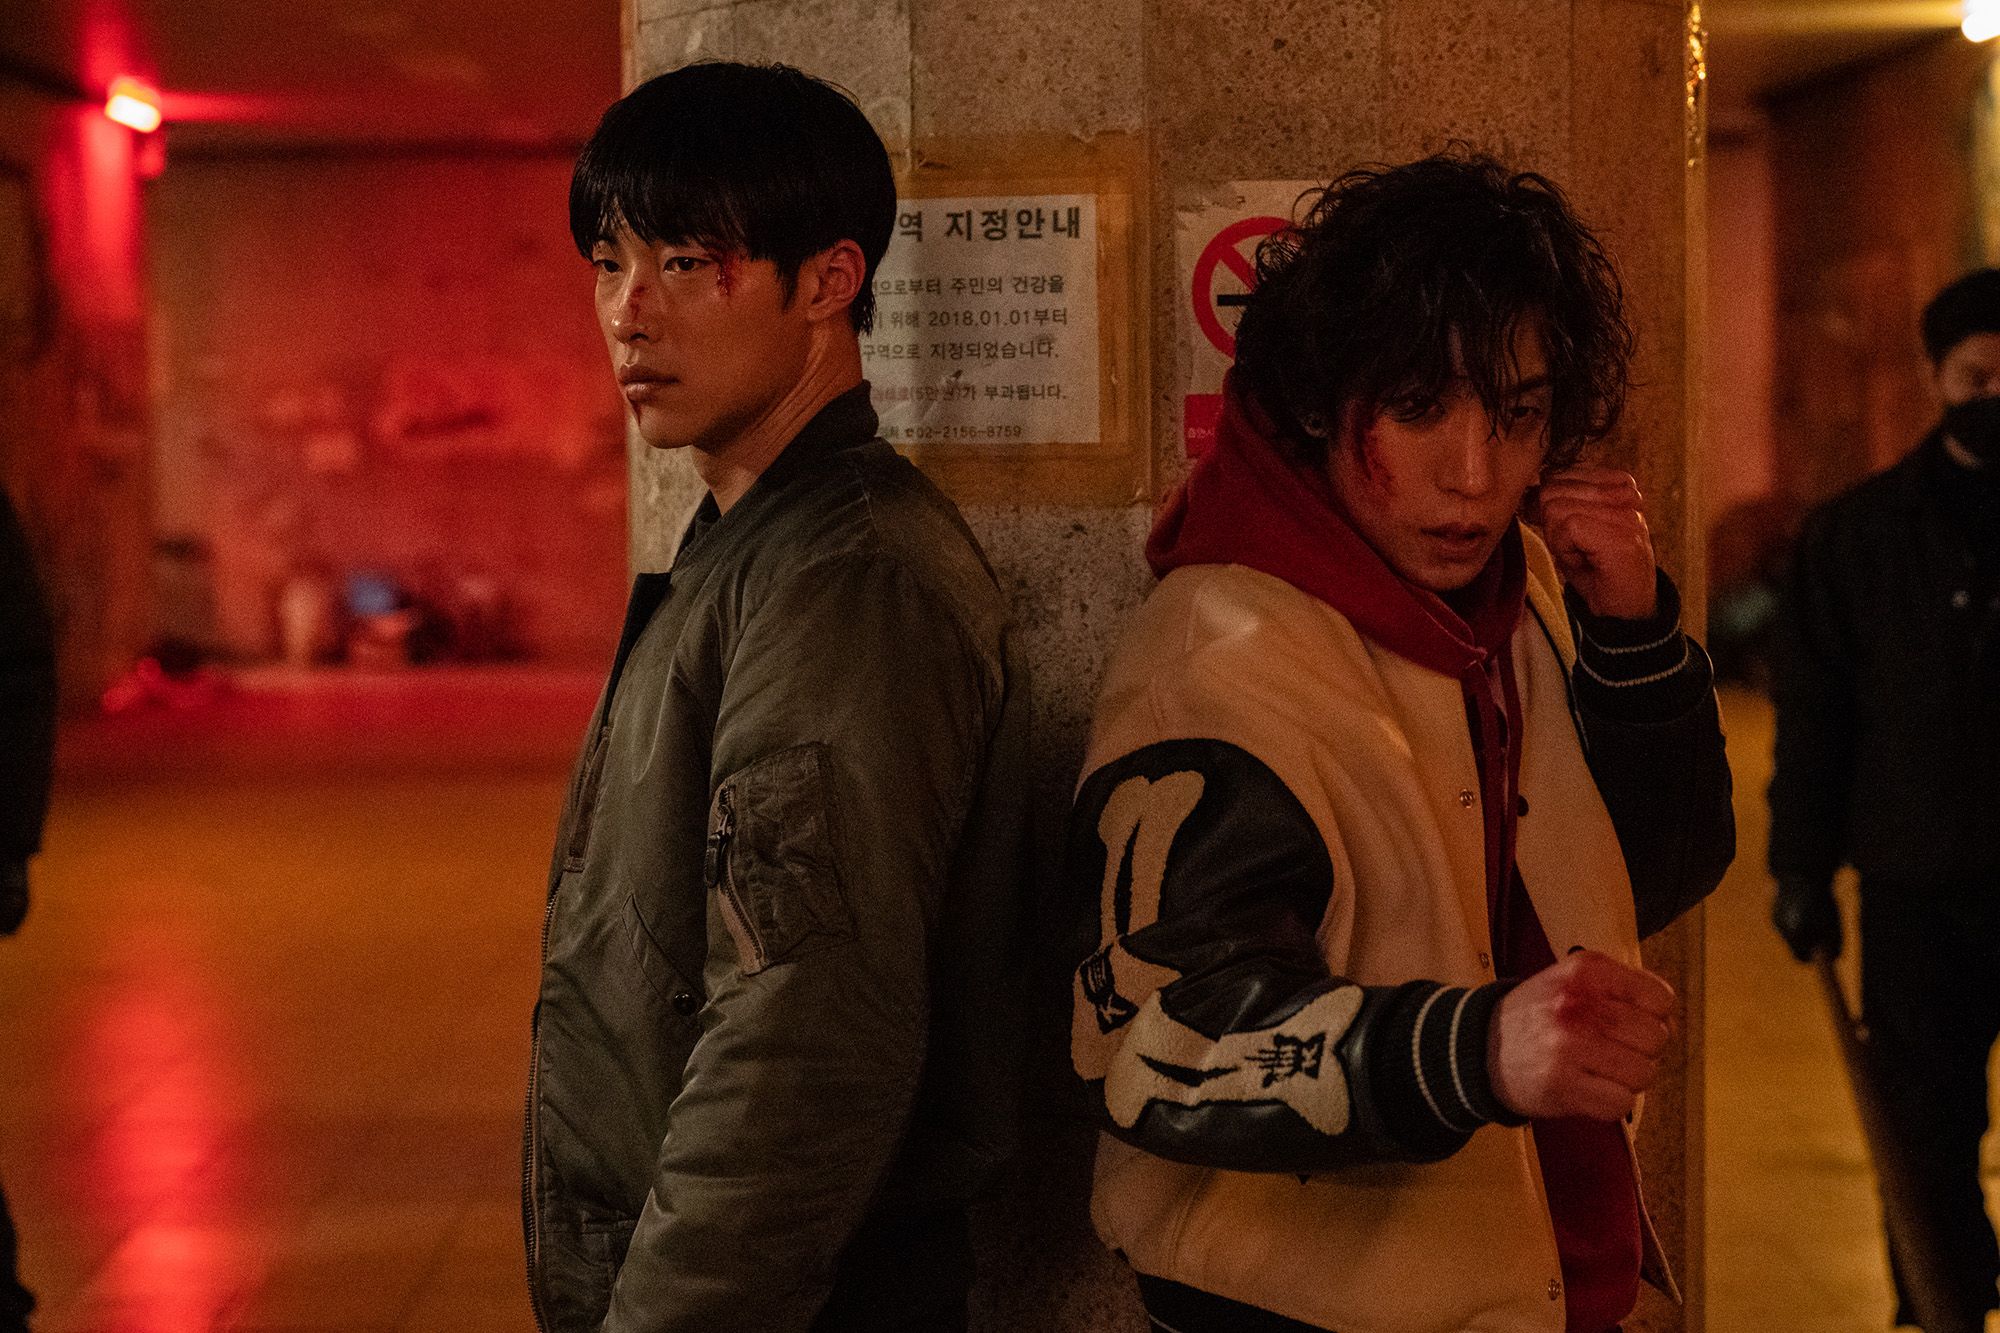 Series coreanas en Netflix 2023: todo lo que tenés que saber con